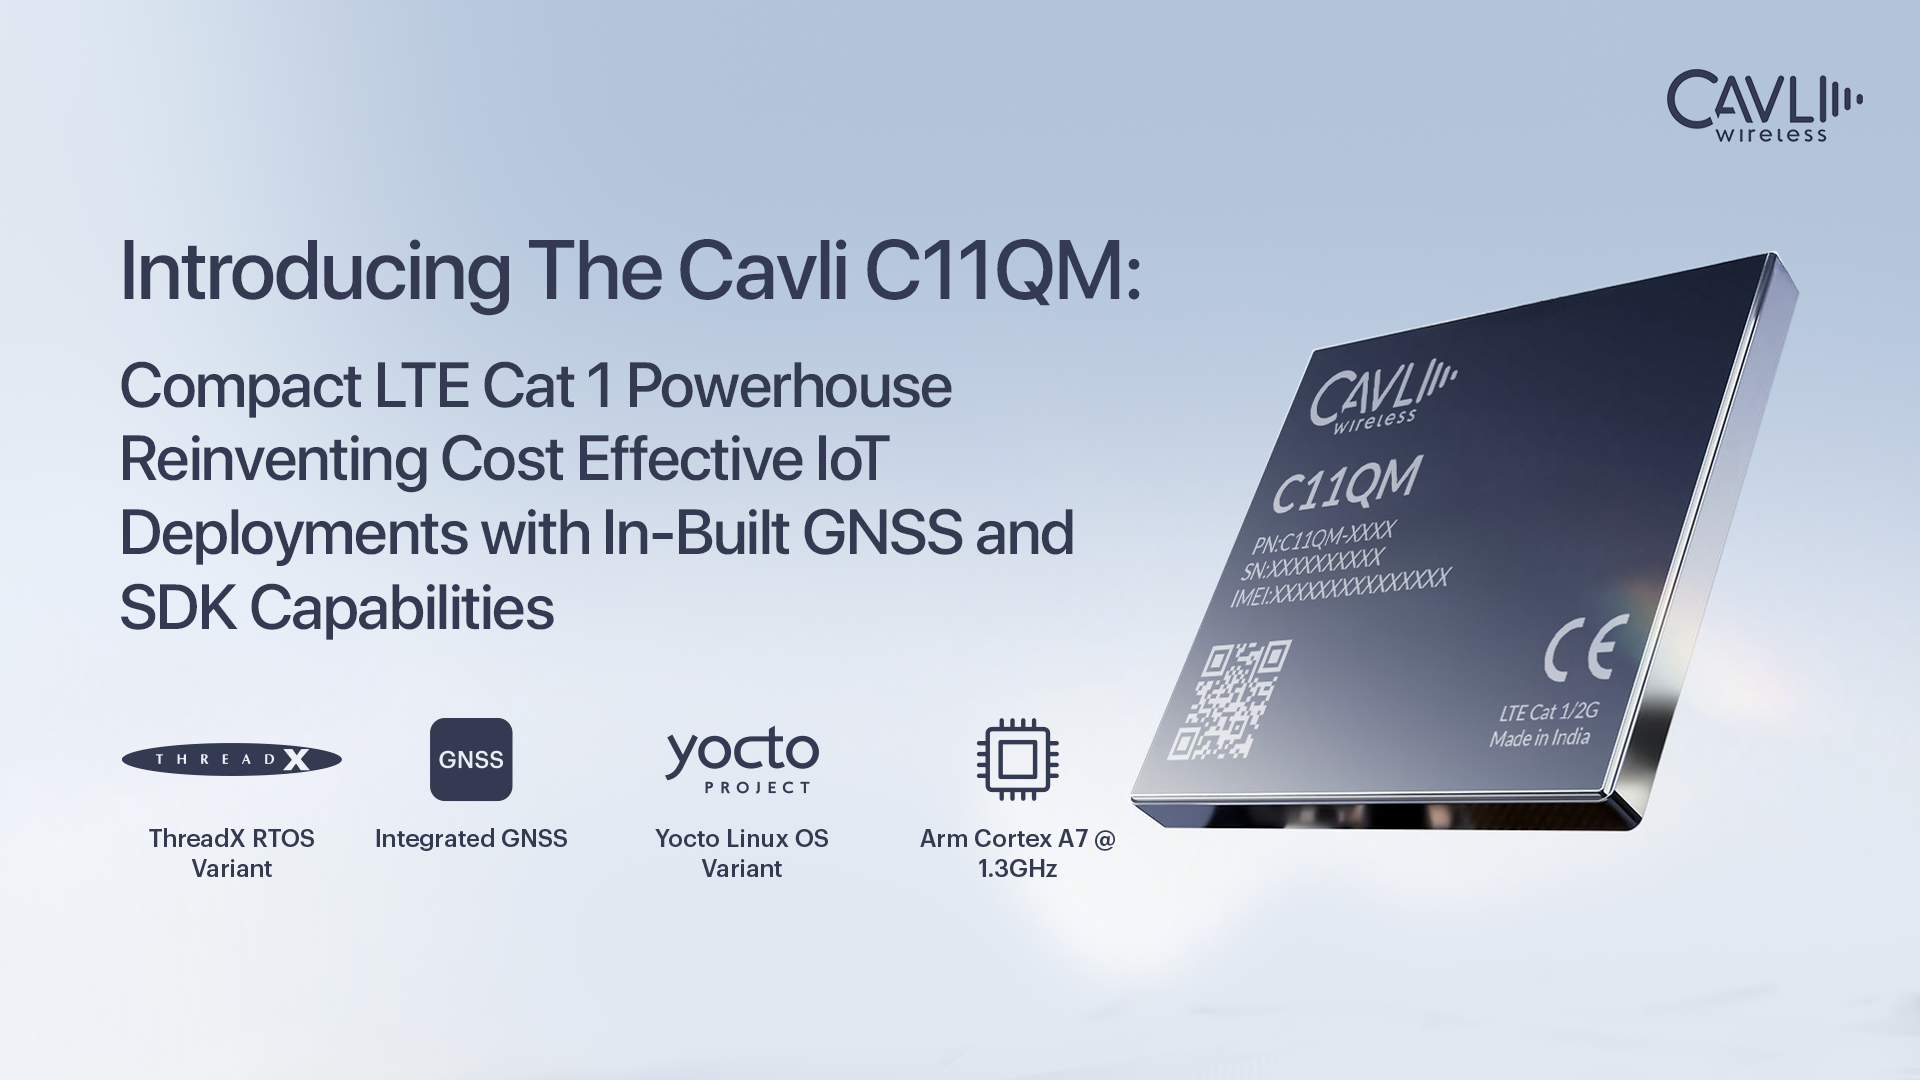 Introducing The Cavli C11QM LTE Cat 1 Module